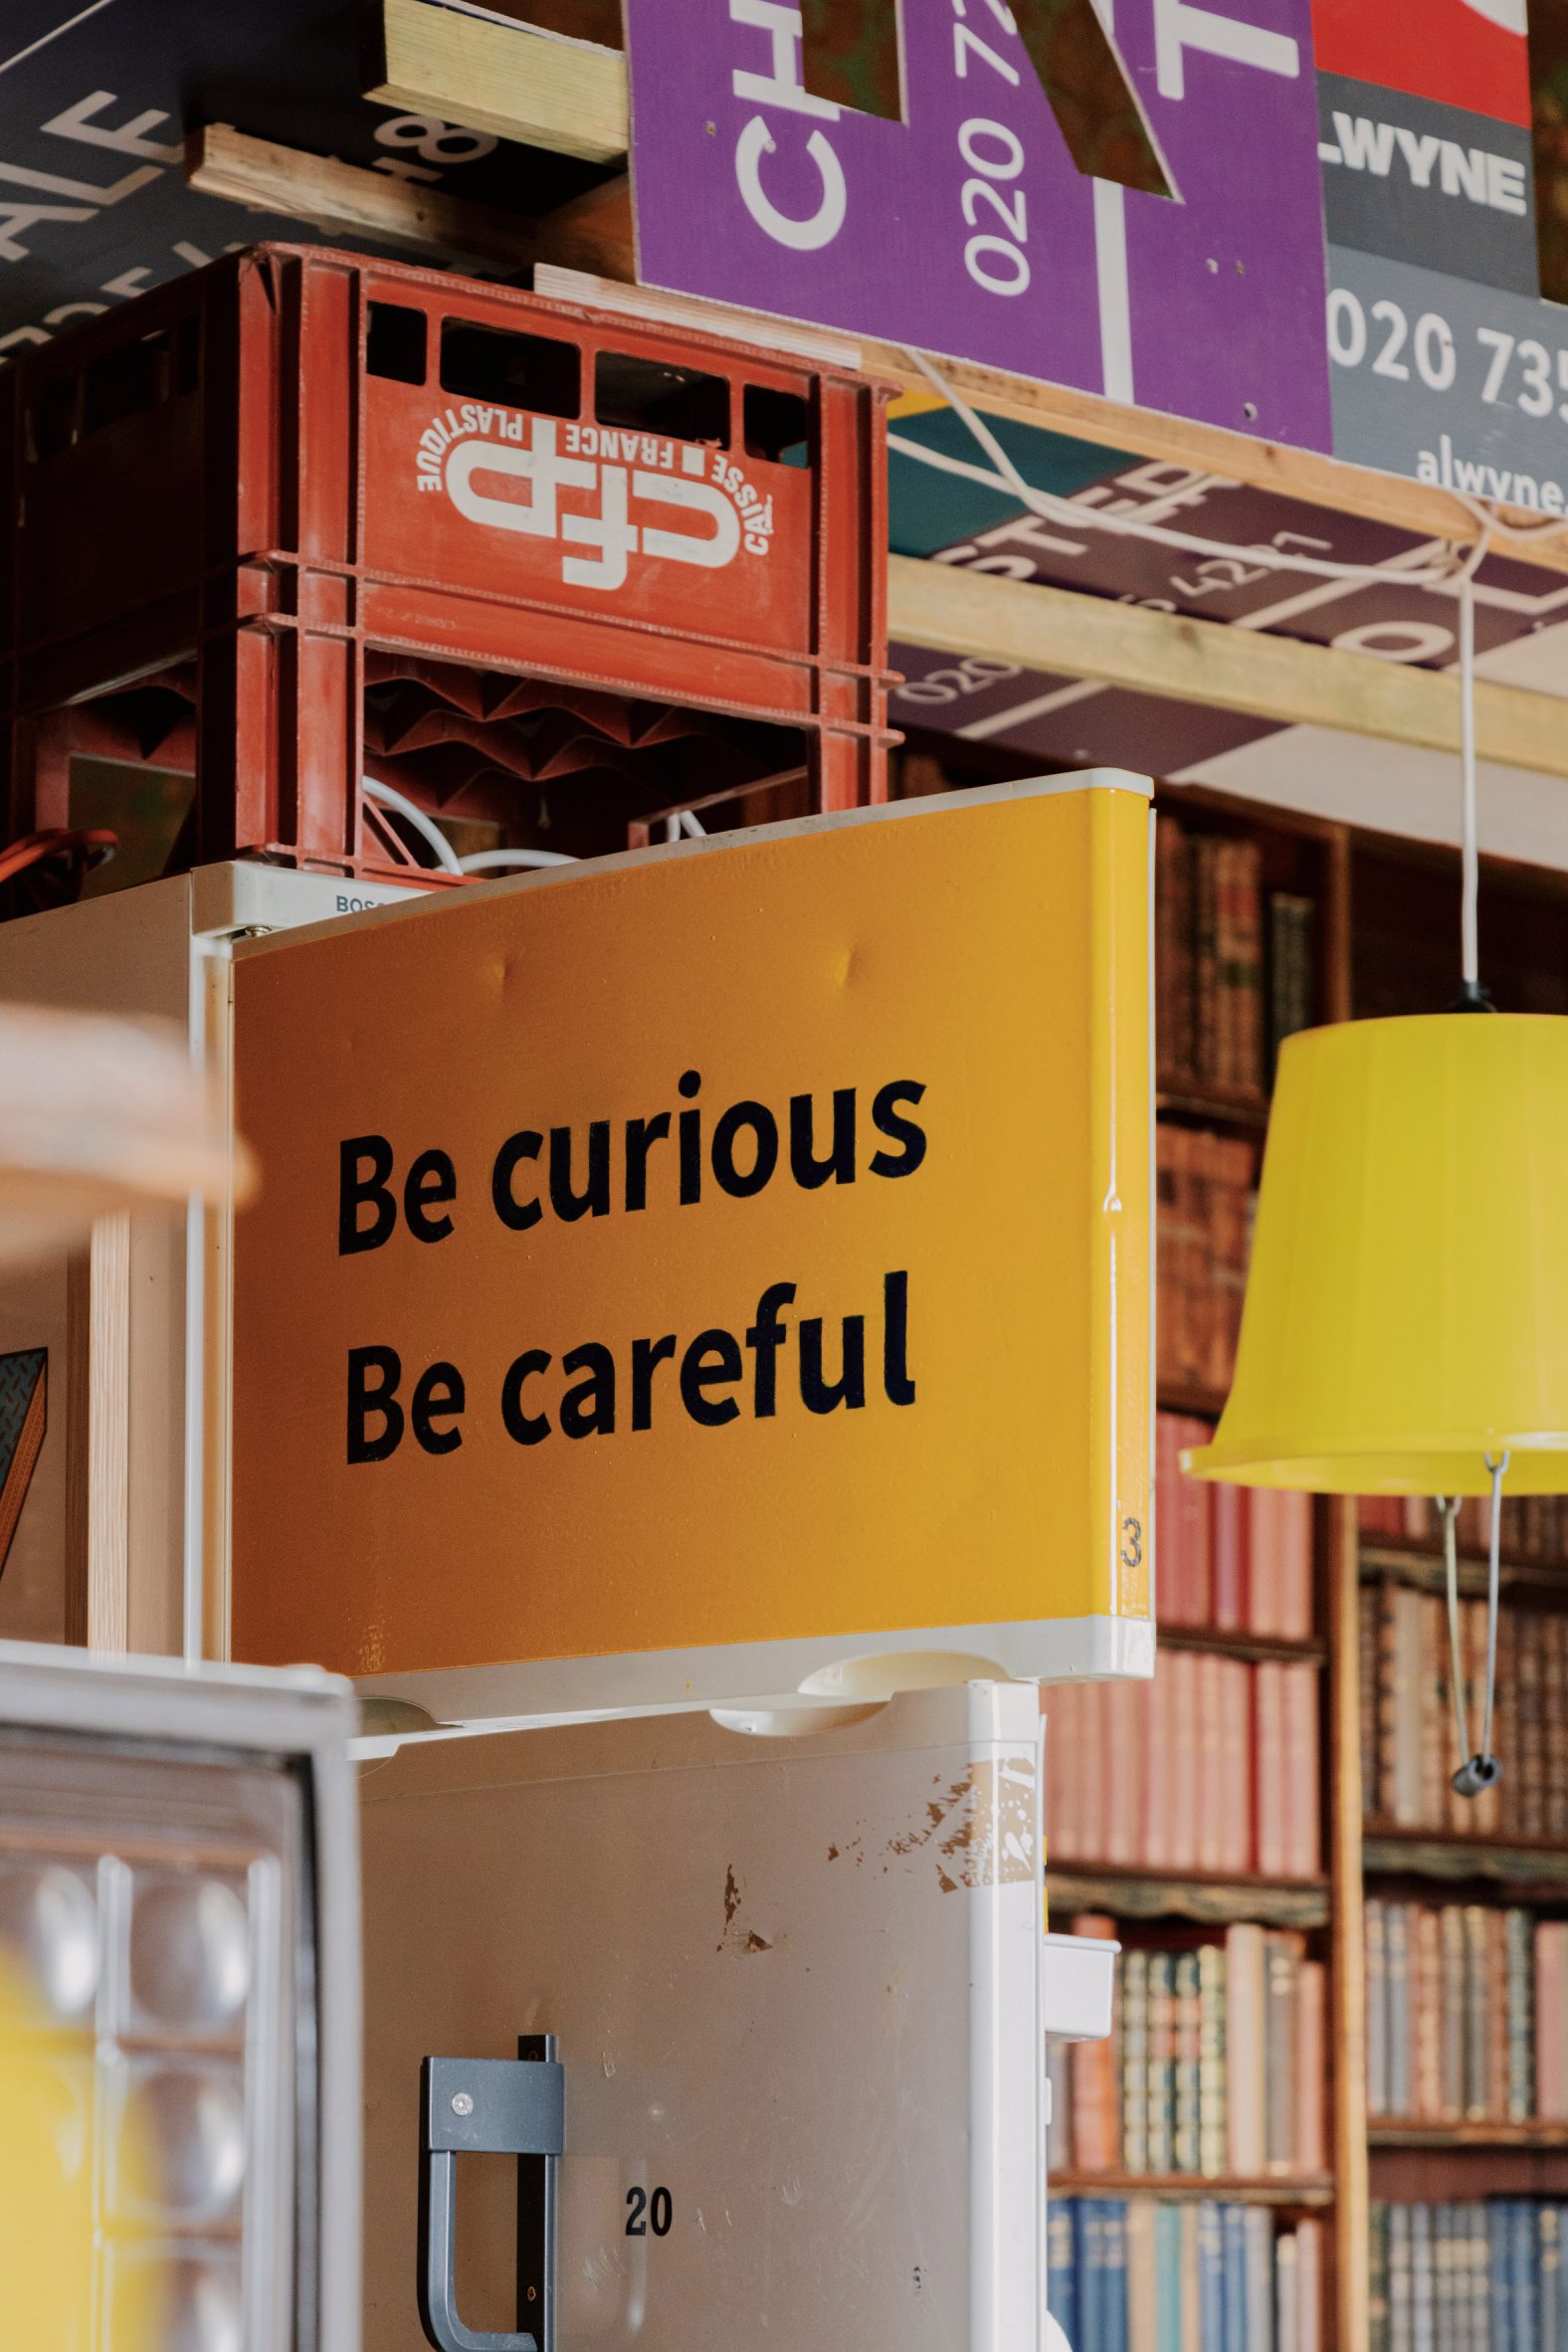 Be curious, be careful